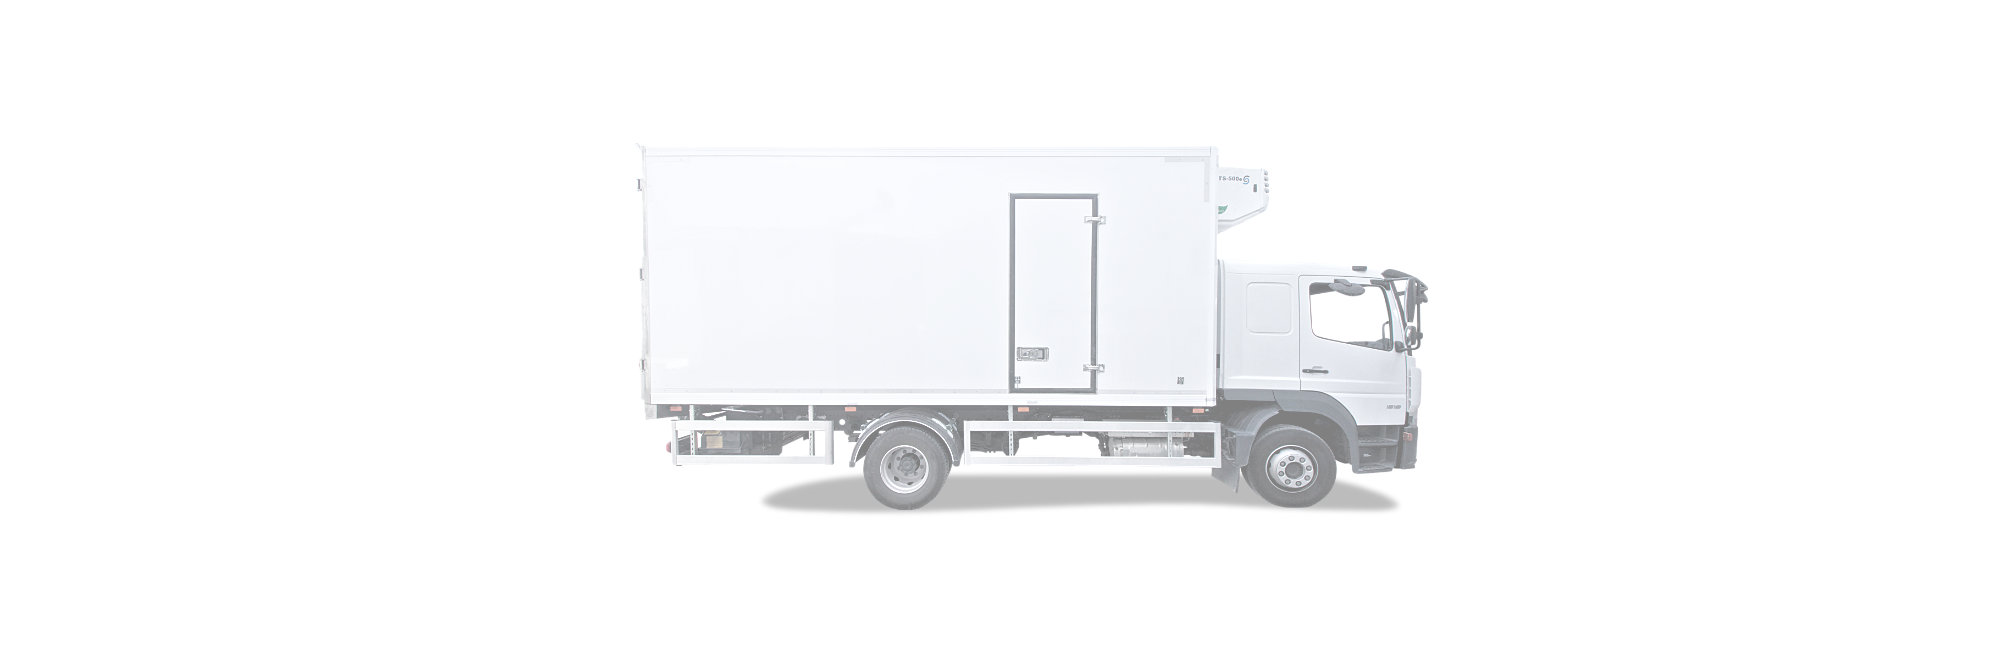 Decopan Commercial Vehicle (Ticari Araç) CTP levha galeri et ve taze gıda kamyon treyler kasa